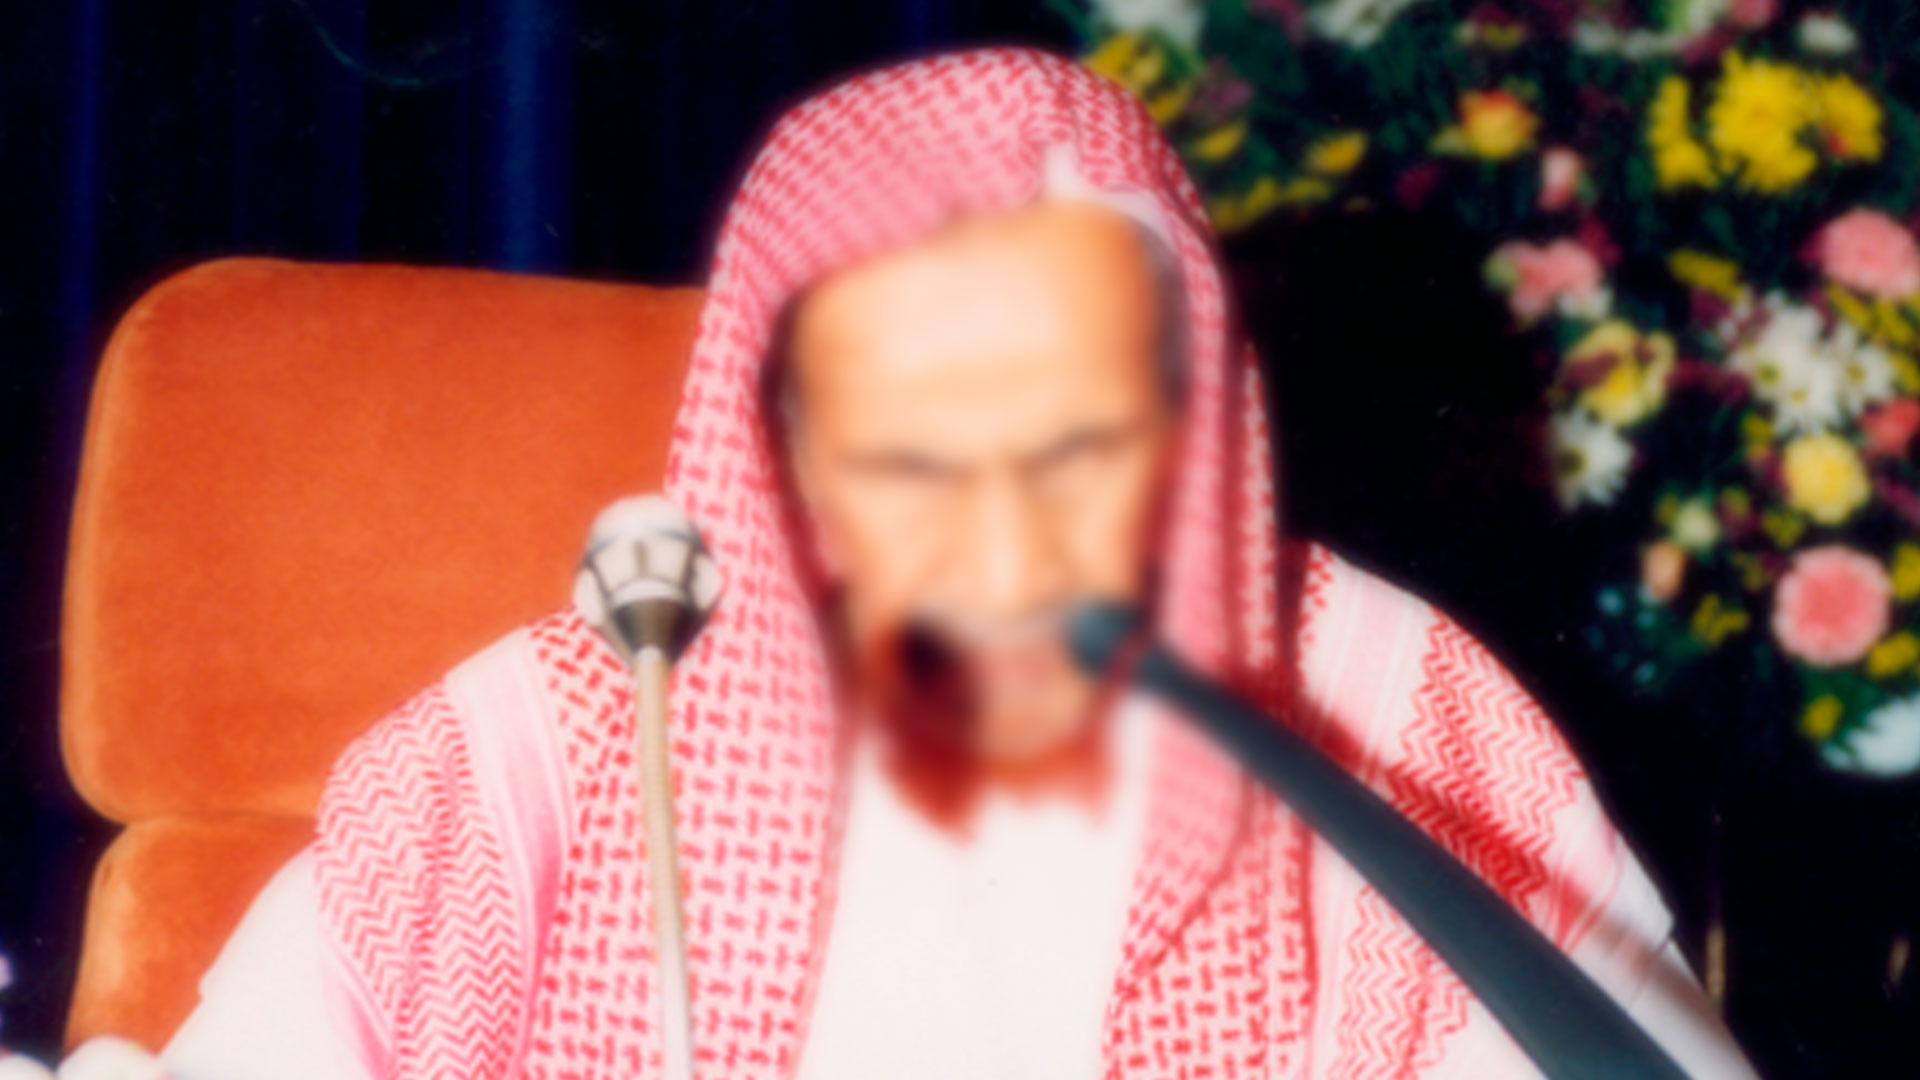 муфтий саудовской аравии